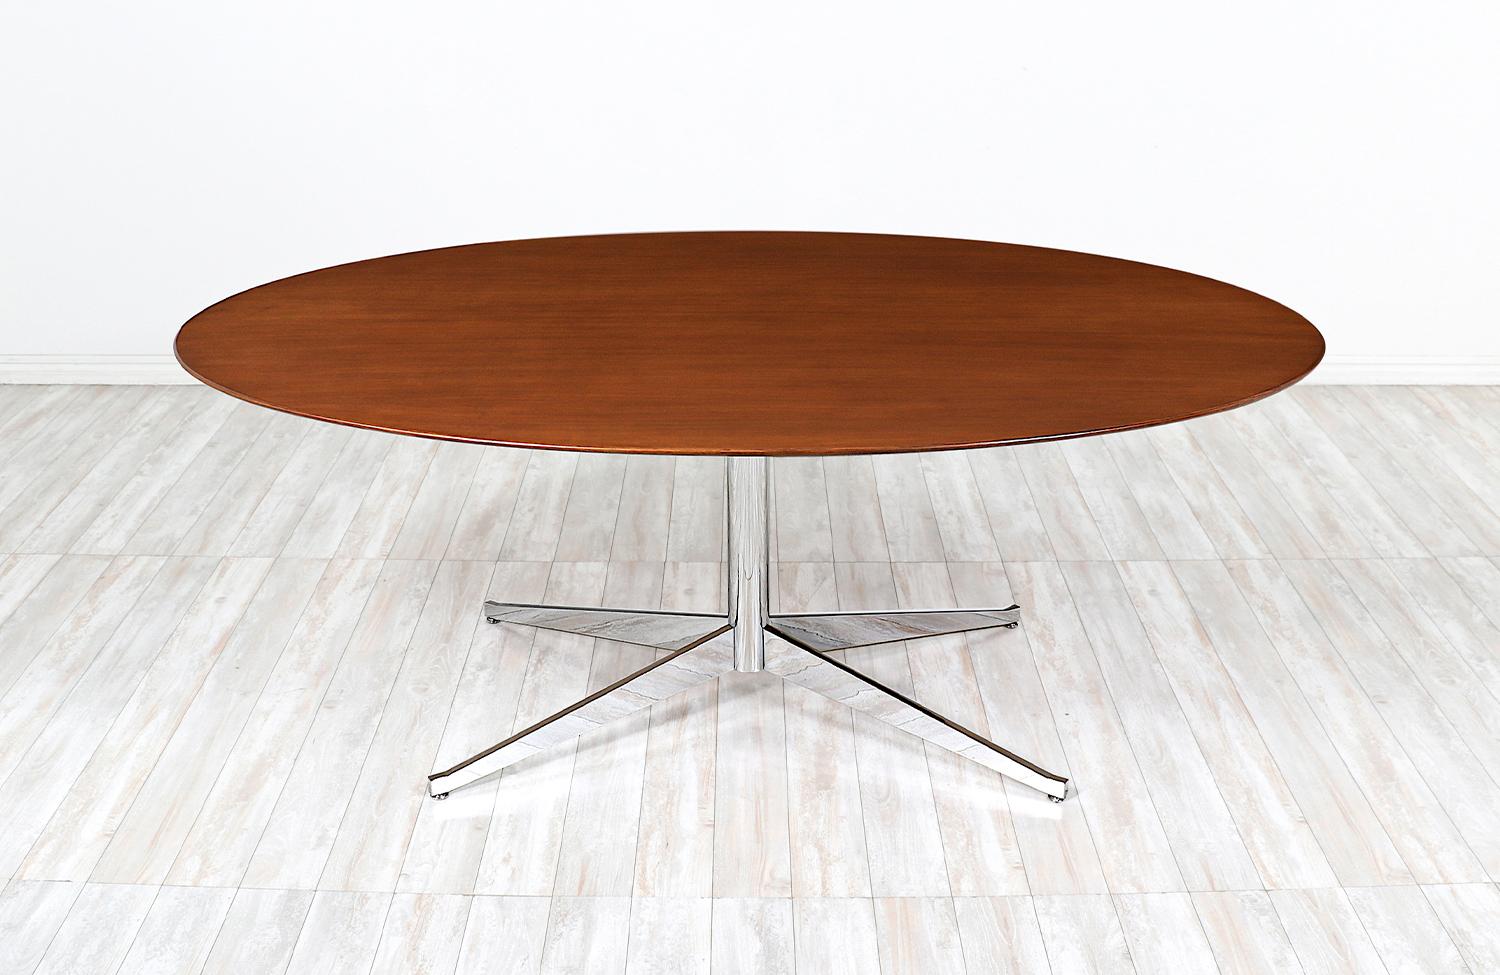 Table polyvalente conçue par Florence Knoll pour Knoll International aux États-Unis vers les années 1960. Ce modèle emblématique présente un plateau ovale en bois de noyer massif qui repose sur un poteau en métal chromé avec une base à quatre